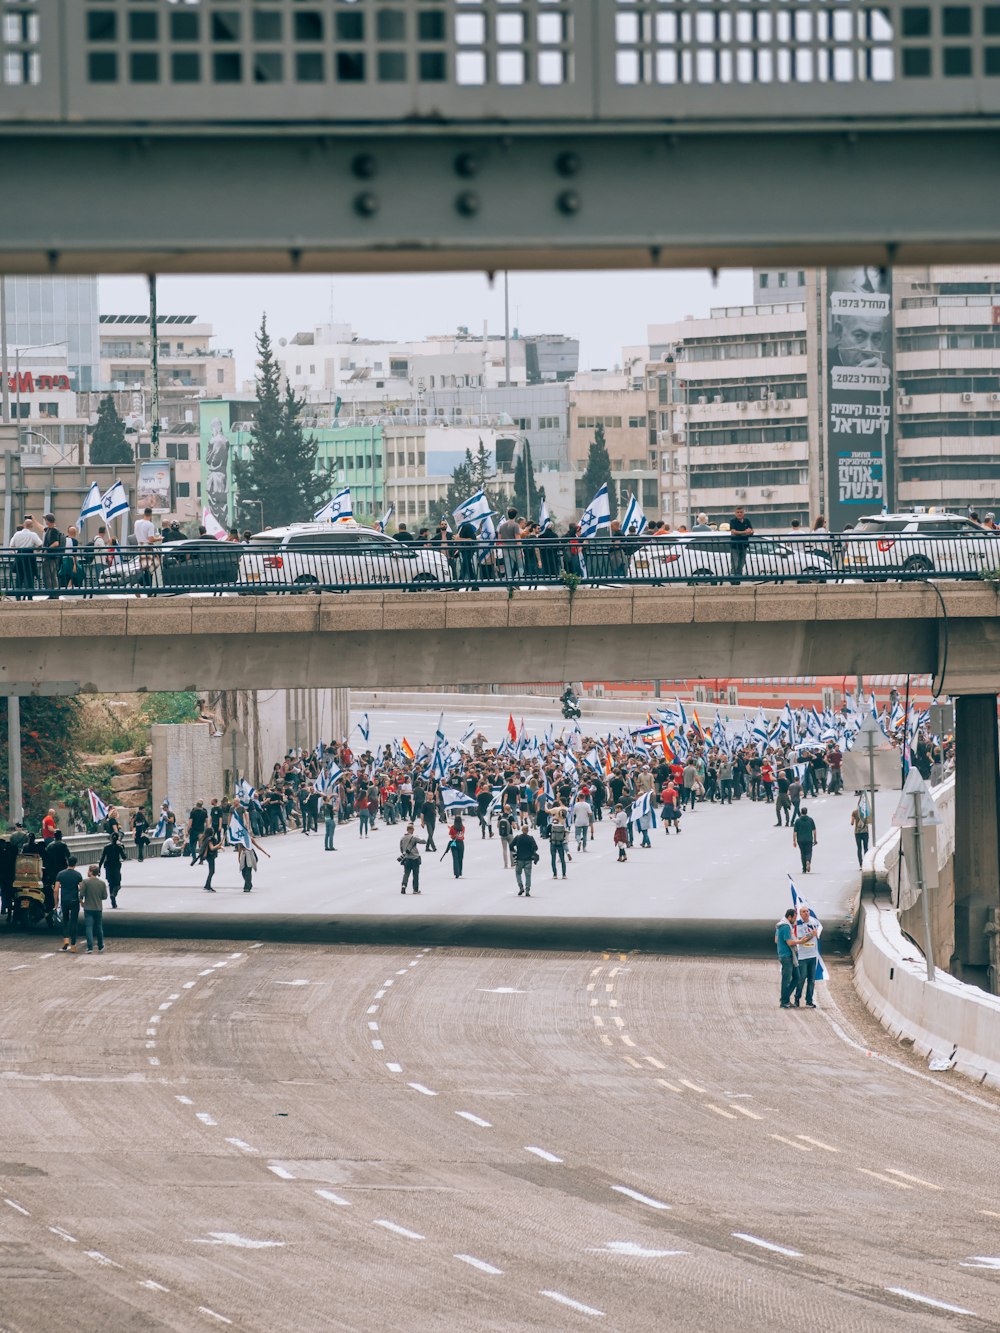 a crowd of people walking across a bridge